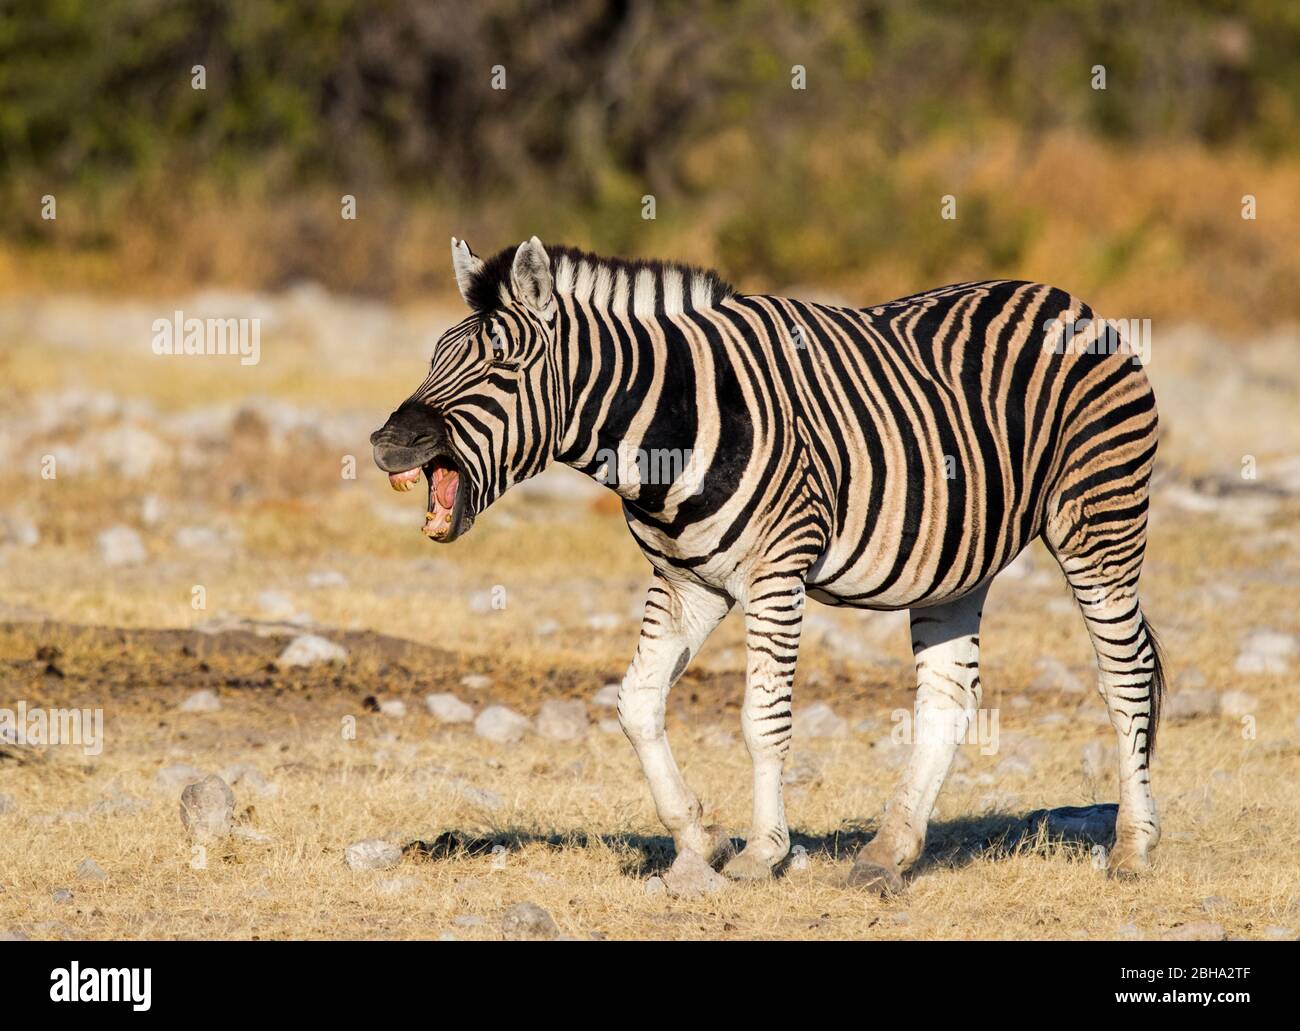 Zebra, Etosha National Park, Namibia Stock Photo